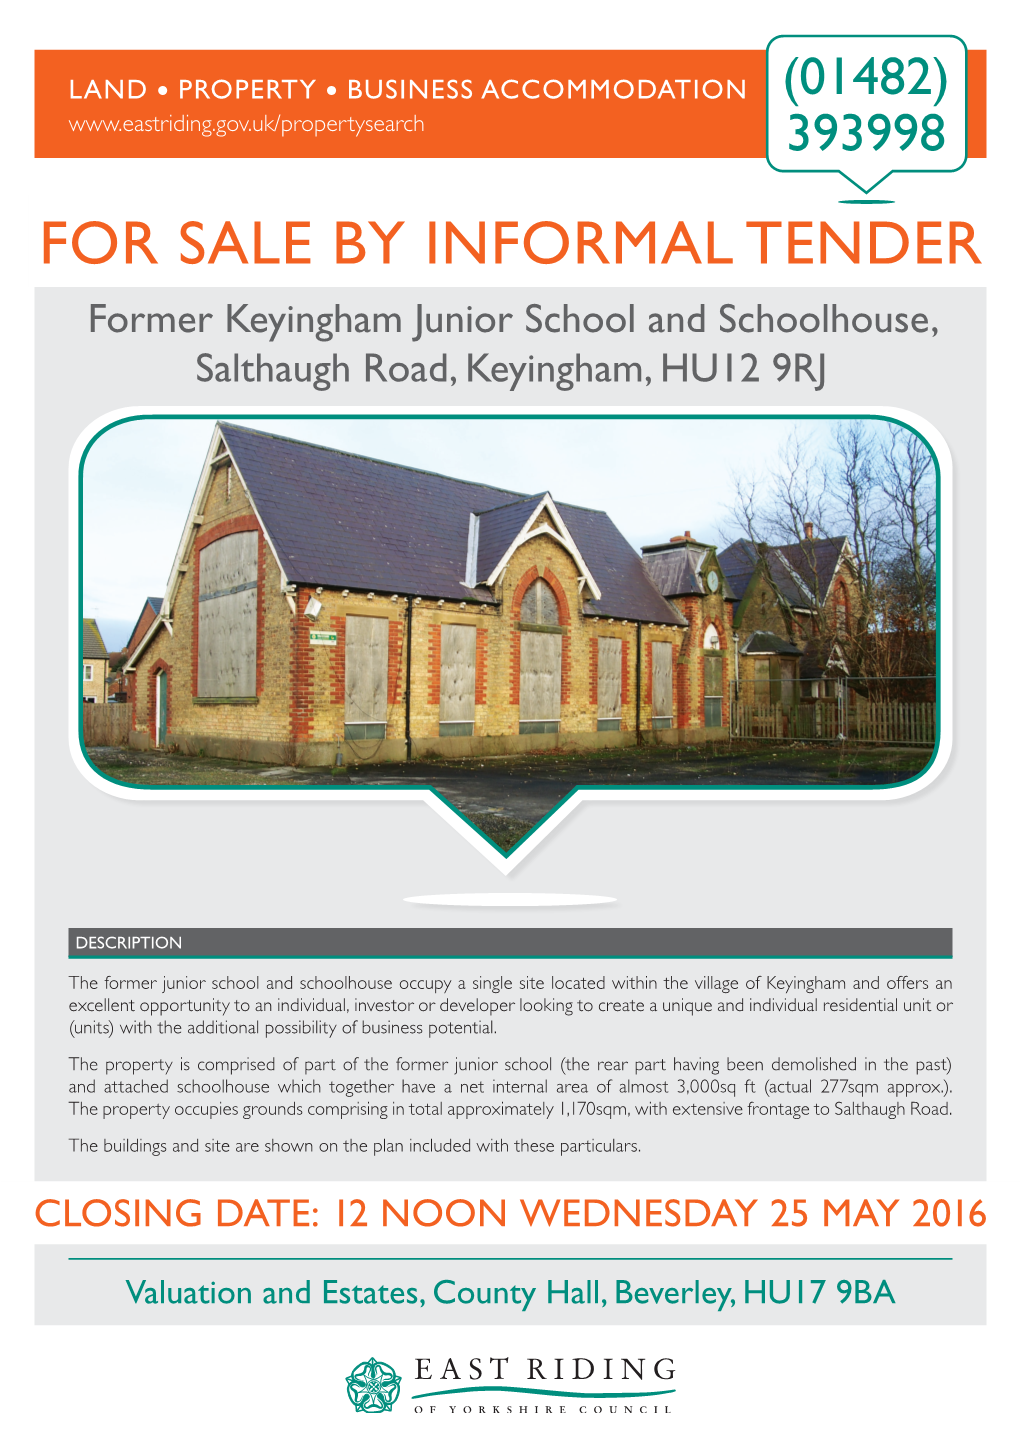 FOR SALE by INFORMAL TENDER Former Keyingham Junior School and Schoolhouse, Salthaugh Road, Keyingham, HU12 9RJ